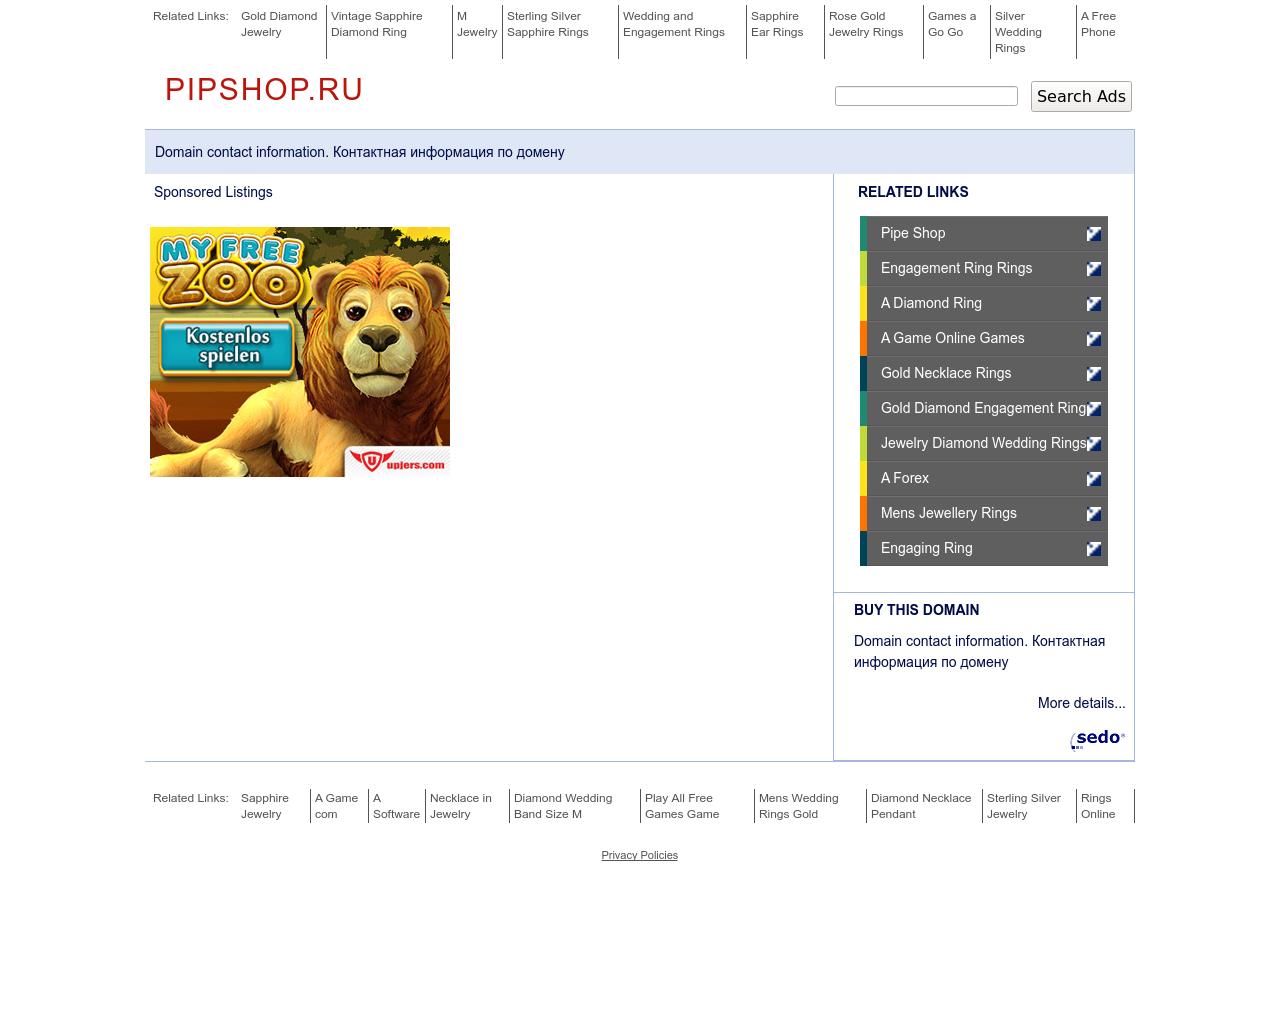 Изображение сайта pipshop.ru в разрешении 1280x1024